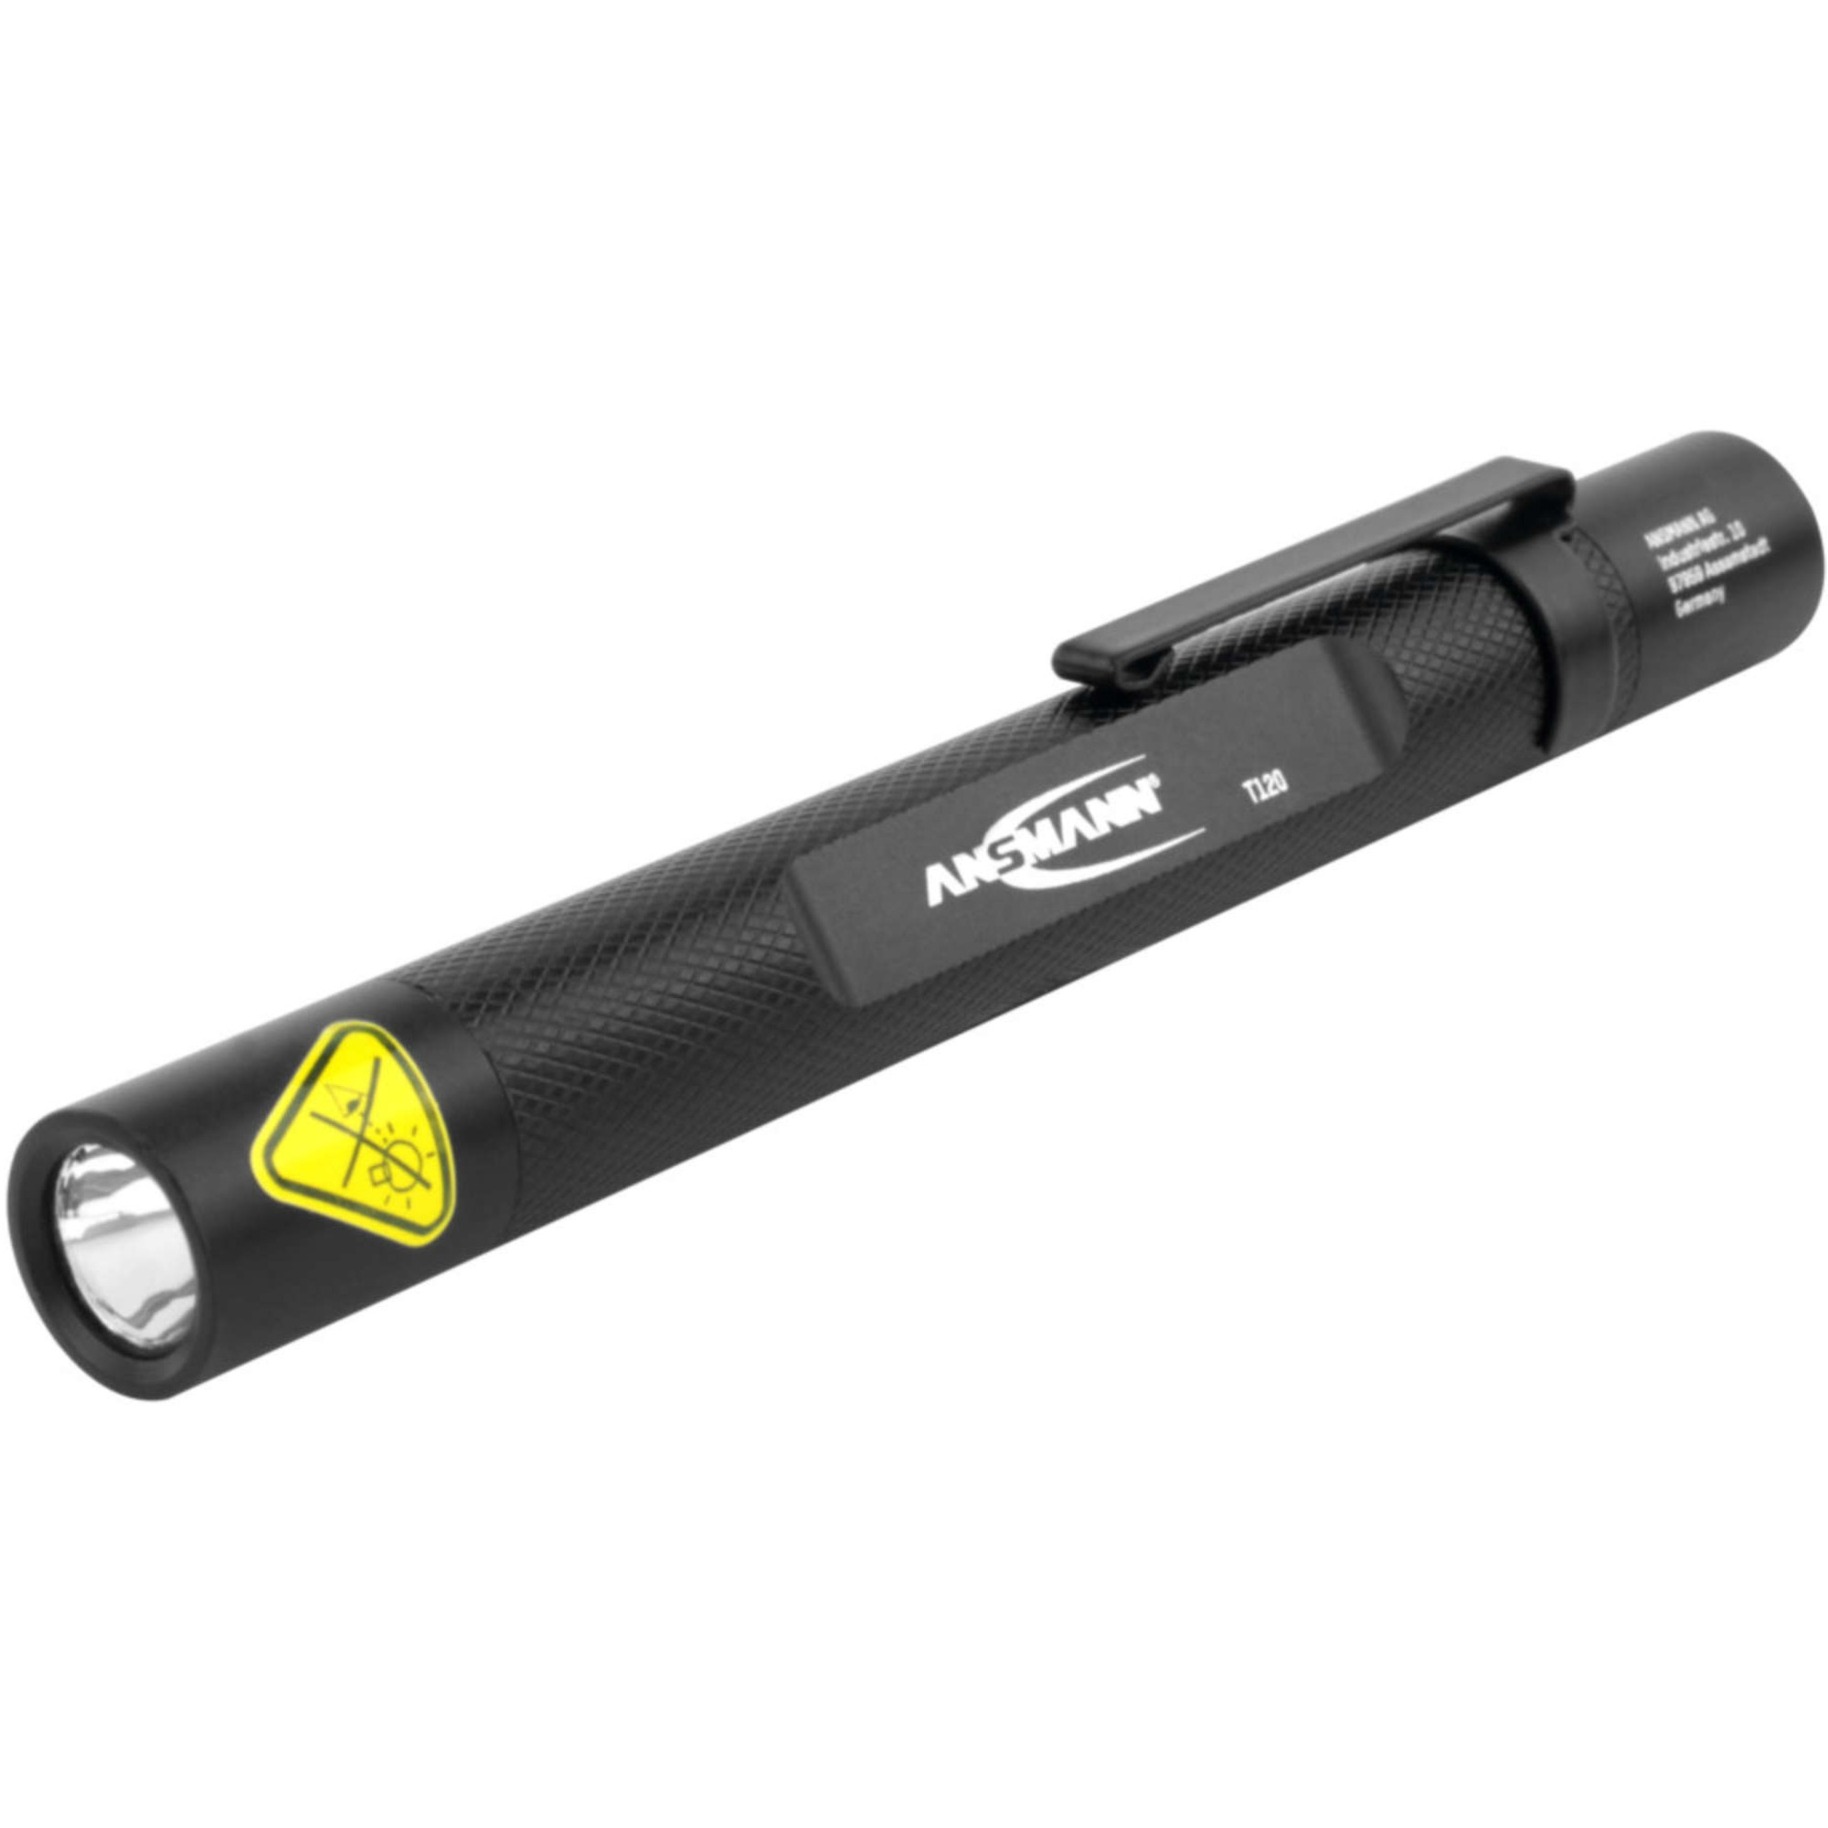 Image of Alternate - Future T120, Taschenlampe online einkaufen bei Alternate